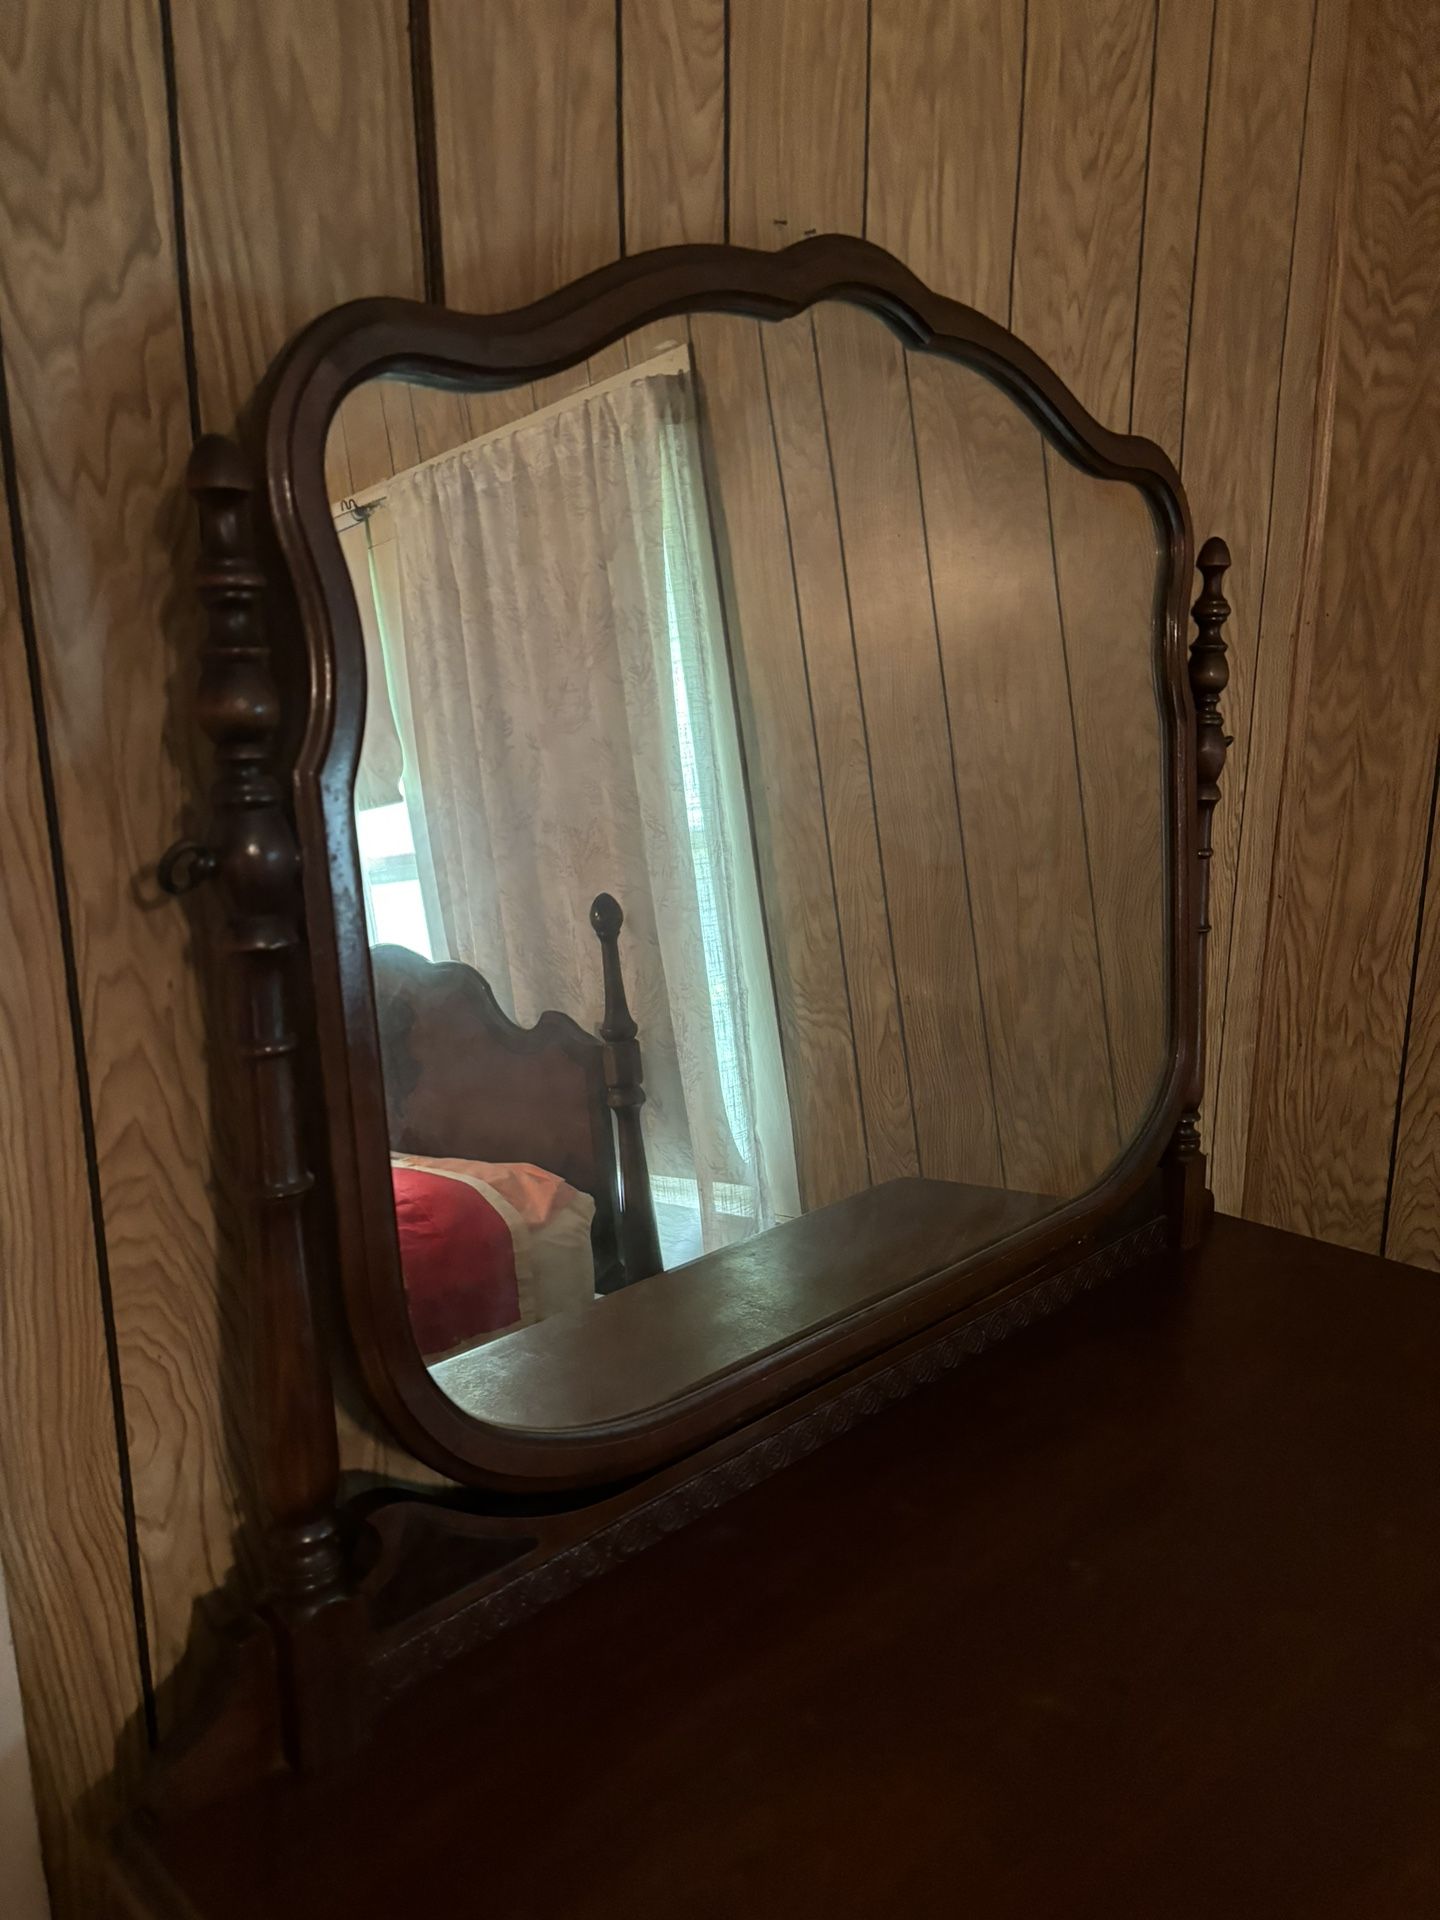 Antique Drawer Dresser with Mirror